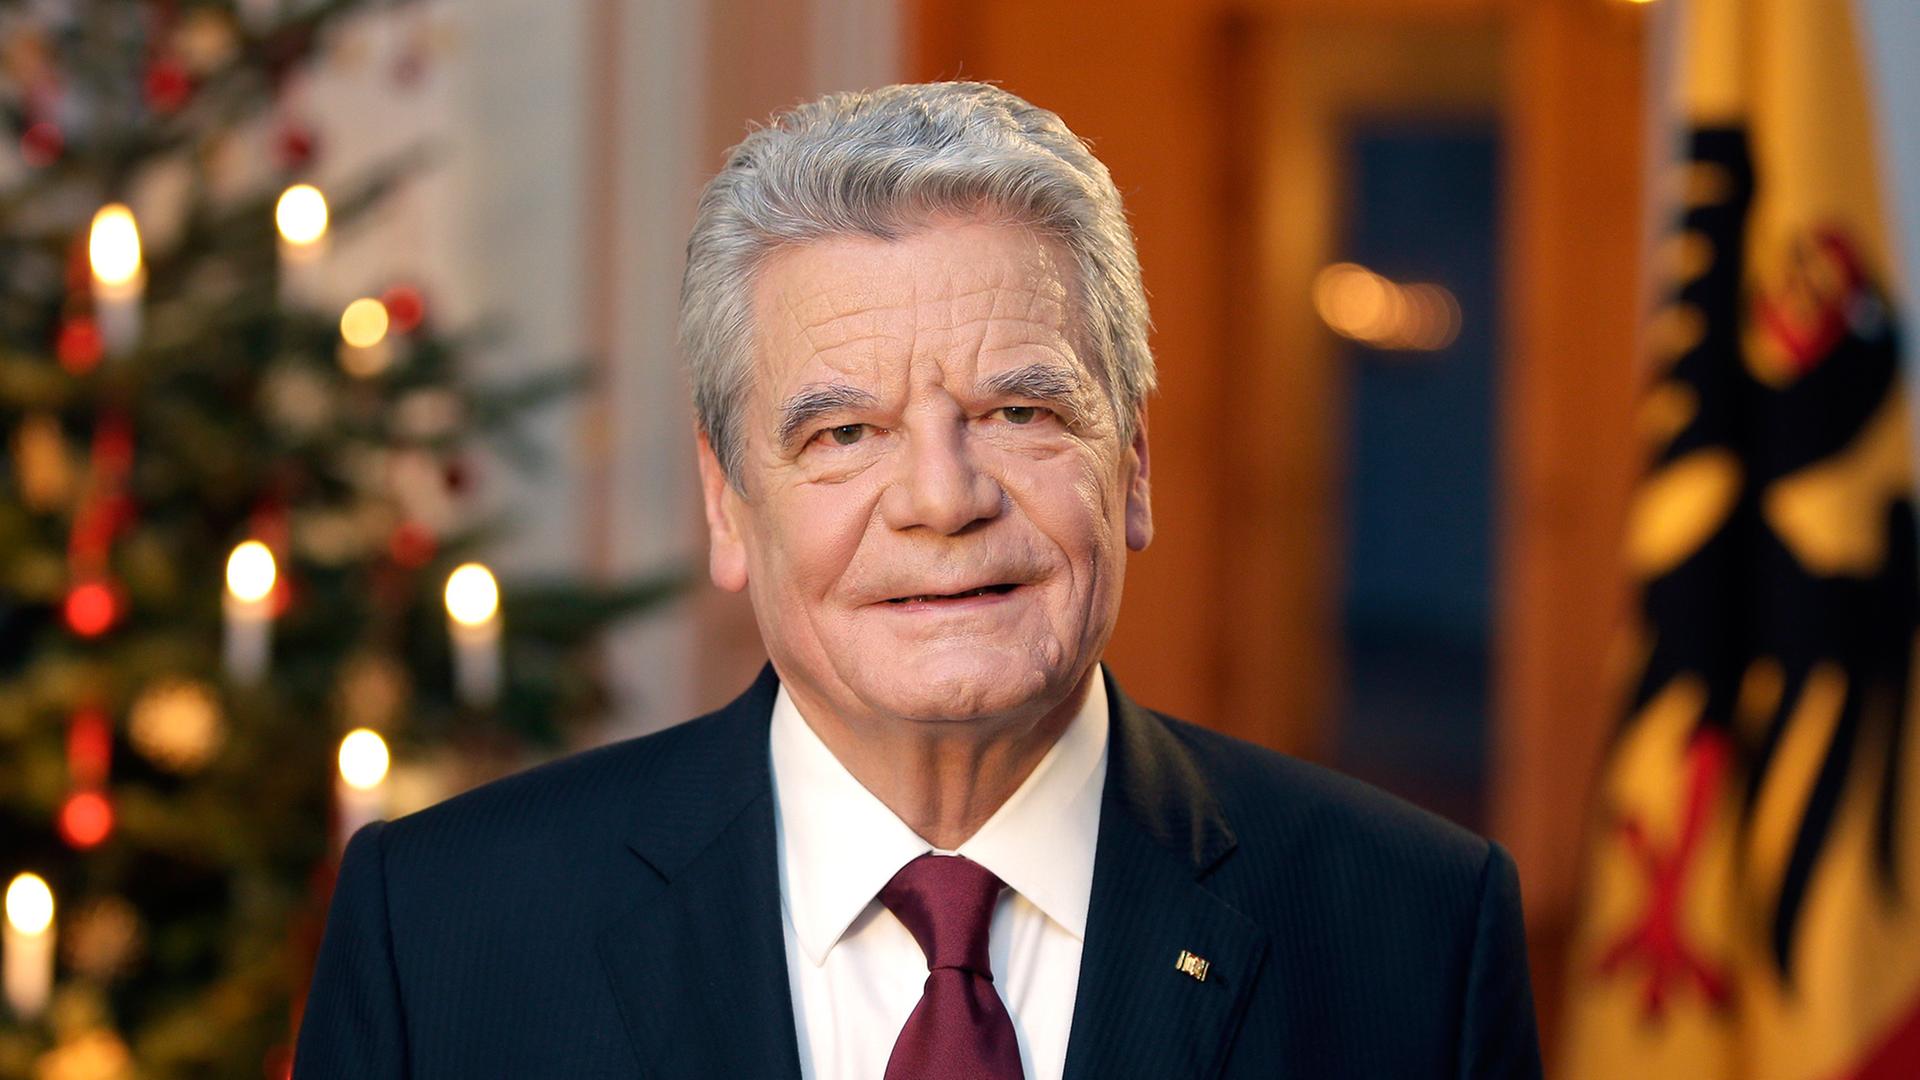 Bundespräsident Gauck nach seiner Weihnachtsansprache, im Hintergrund ein geschmückter Weihnachtsbaum und die deutsche Flagge.